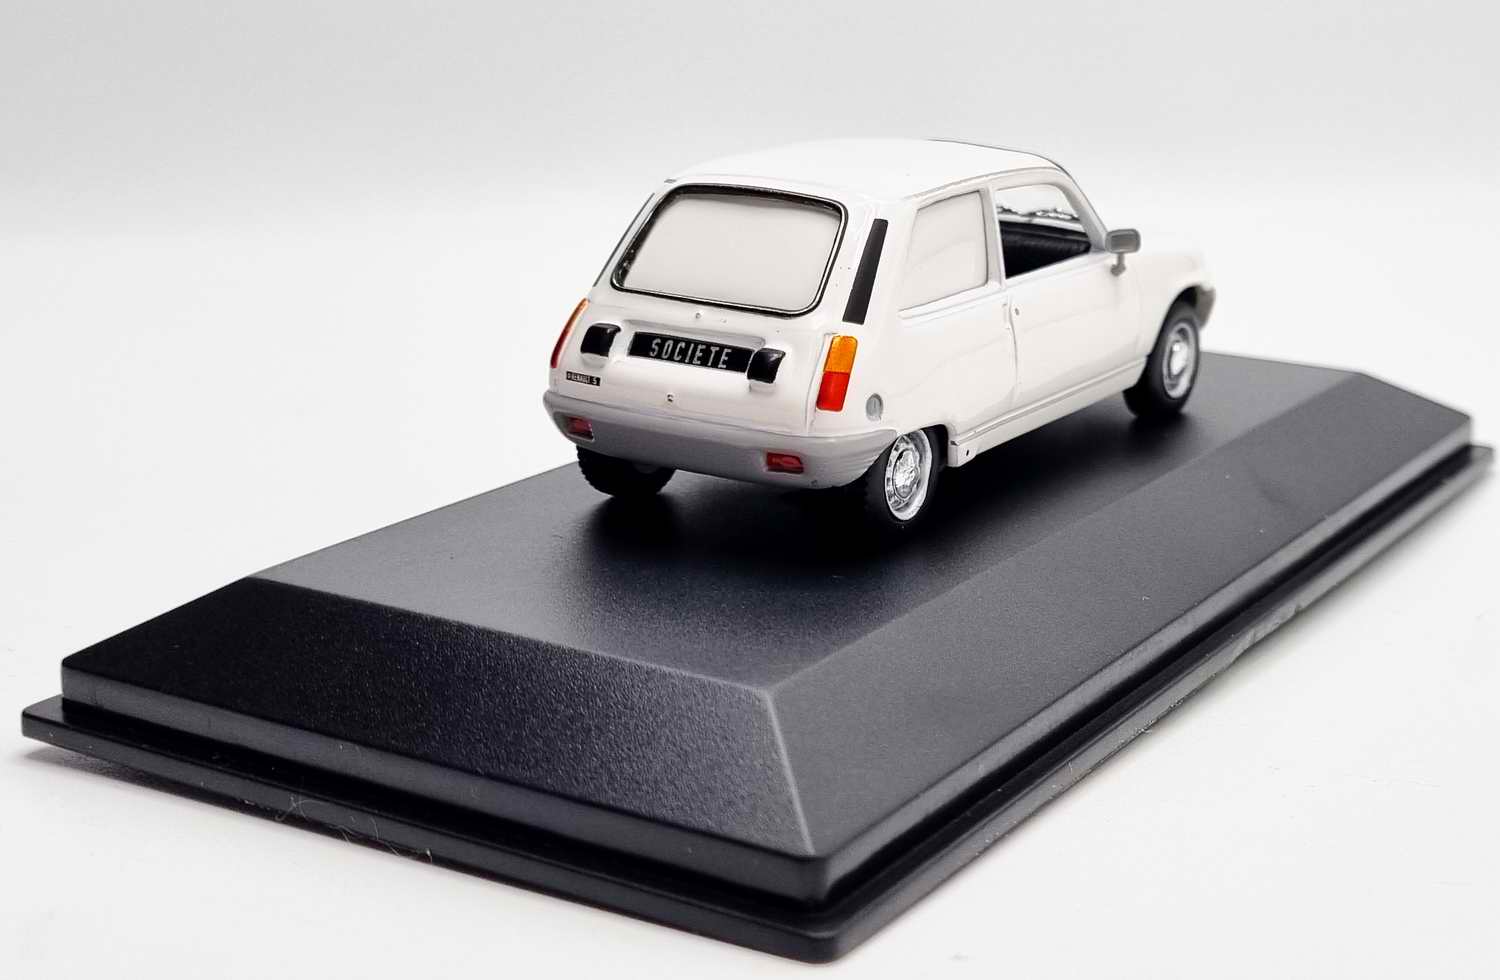 Voiture R5société Miniature Renault5 société 1/43